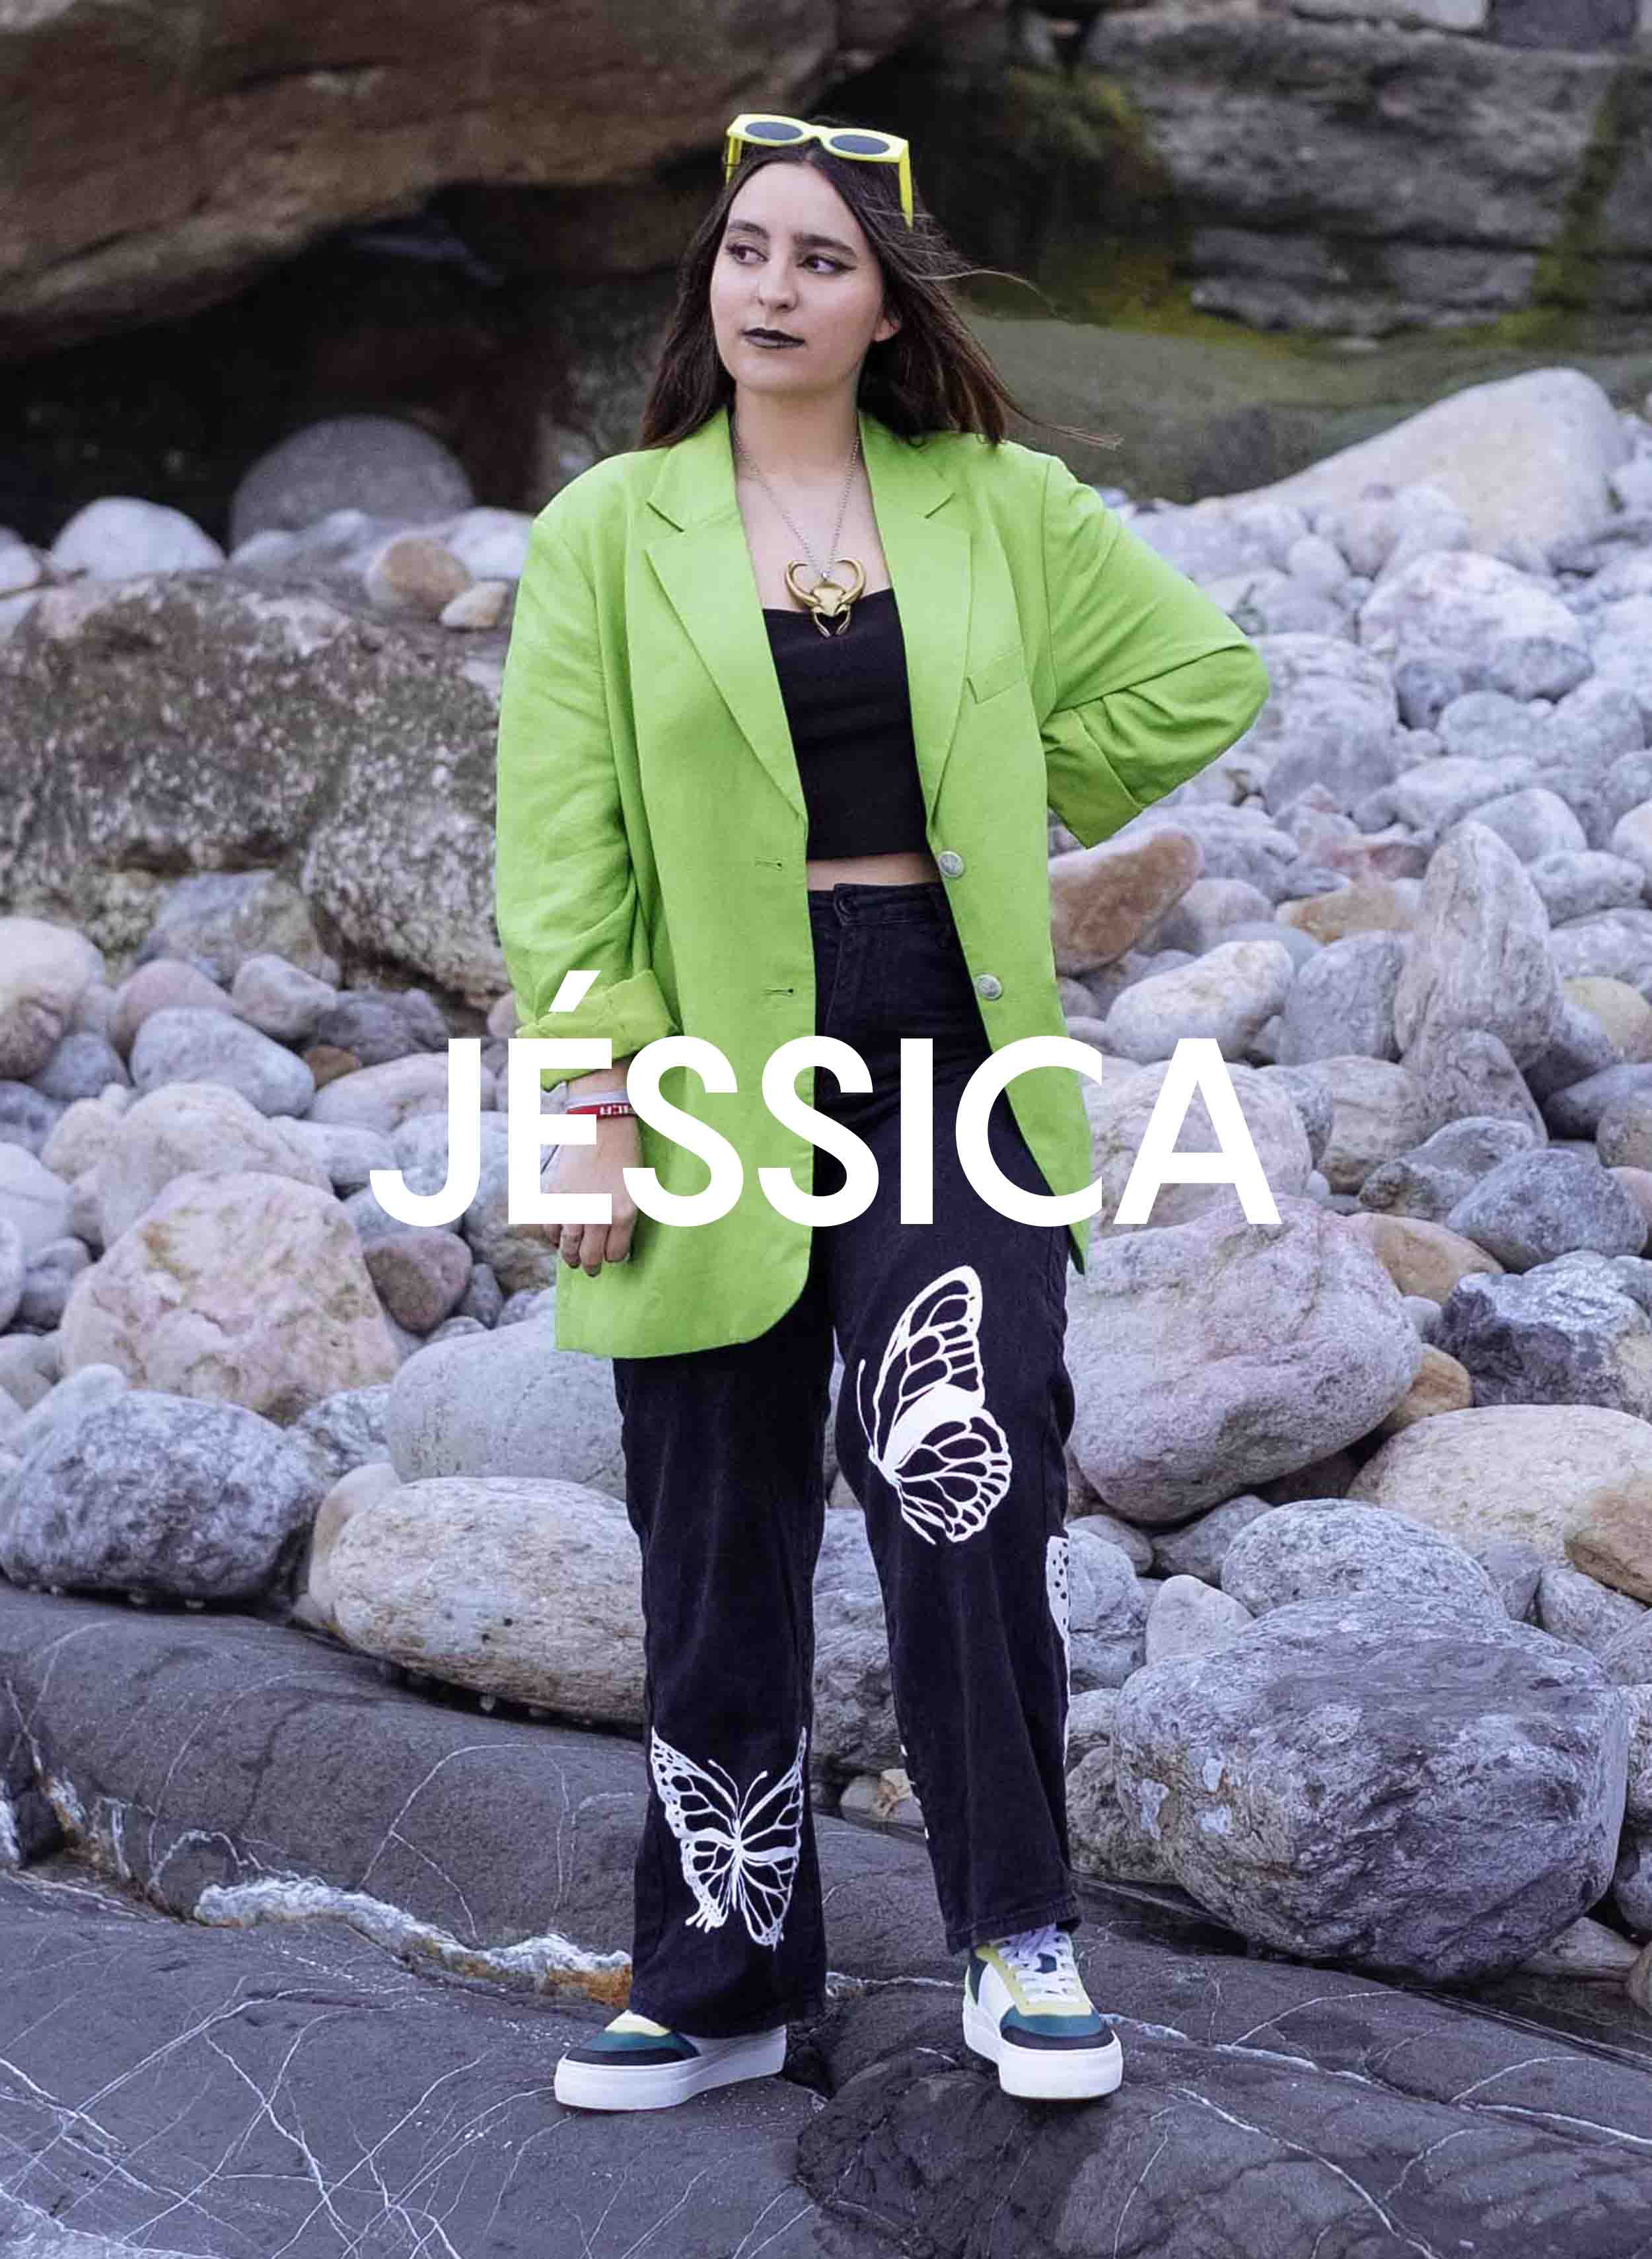 Jessica dans une veste verte et un pantalon noir debout sur des rochers, portant Diverge sneakers, promouvant l’impact social et les chaussures personnalisées à travers le projet Imagine.